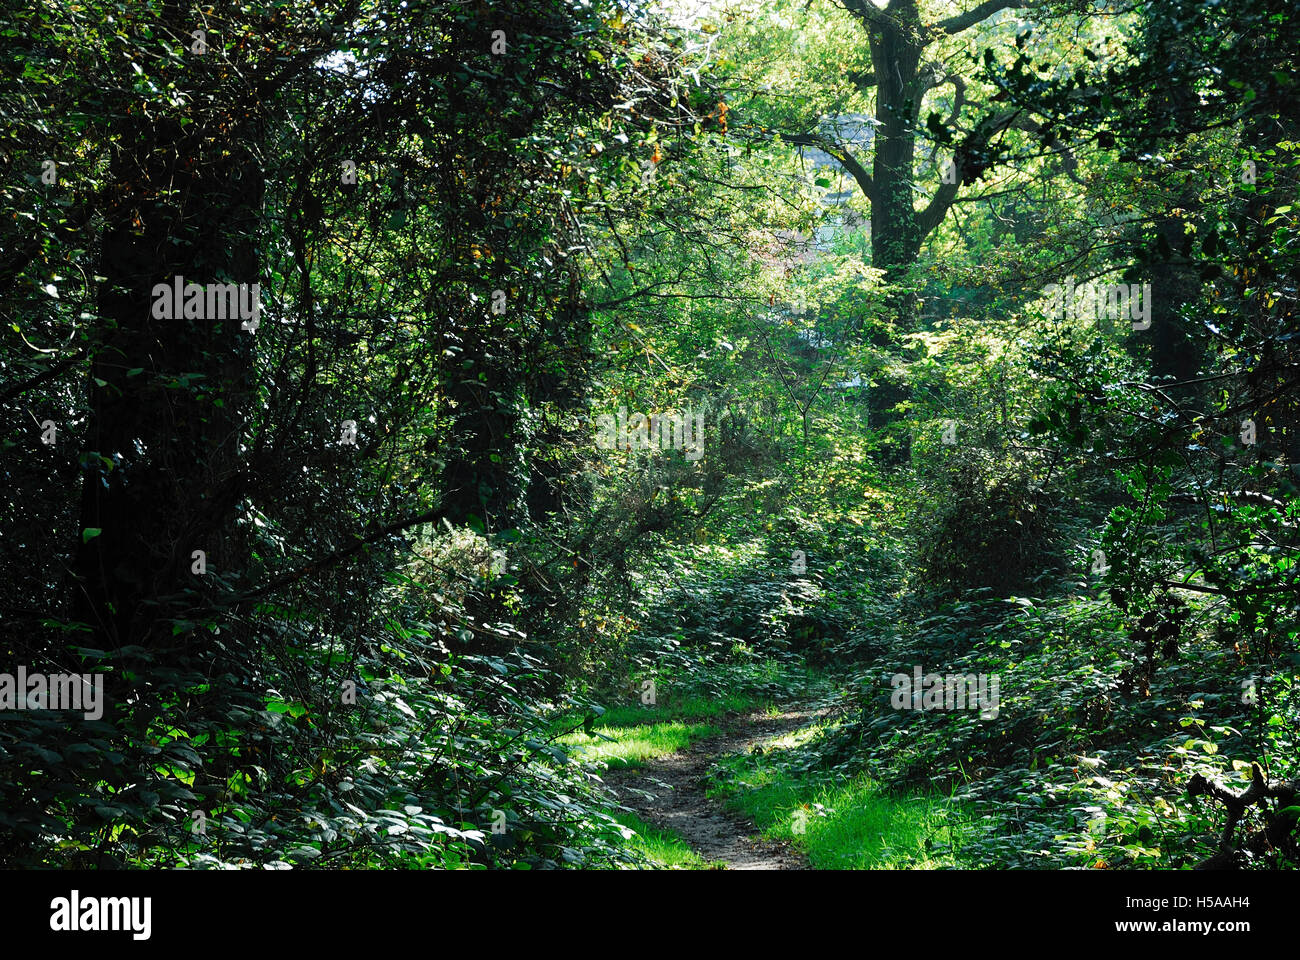 Titlark Copse, Valley Park Bois près de Chandlers Ford, Hamshire, UK Banque D'Images